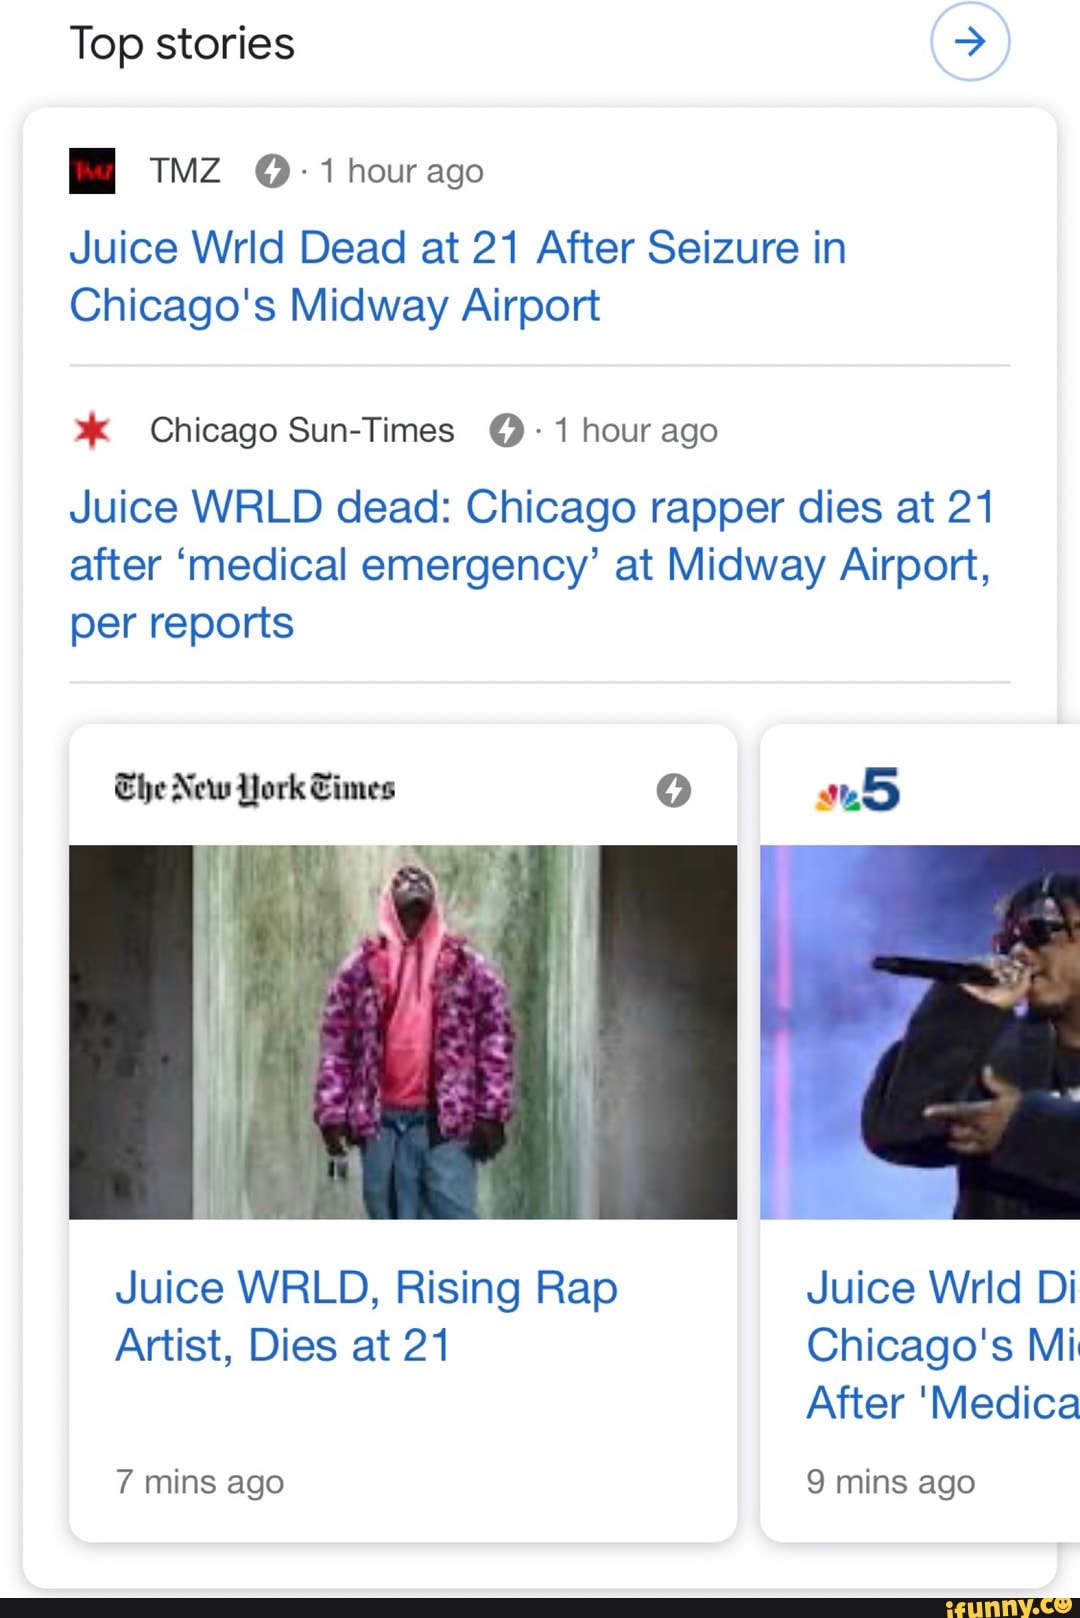 Rapper Juice WRLD dies after medical emergency in Chicago